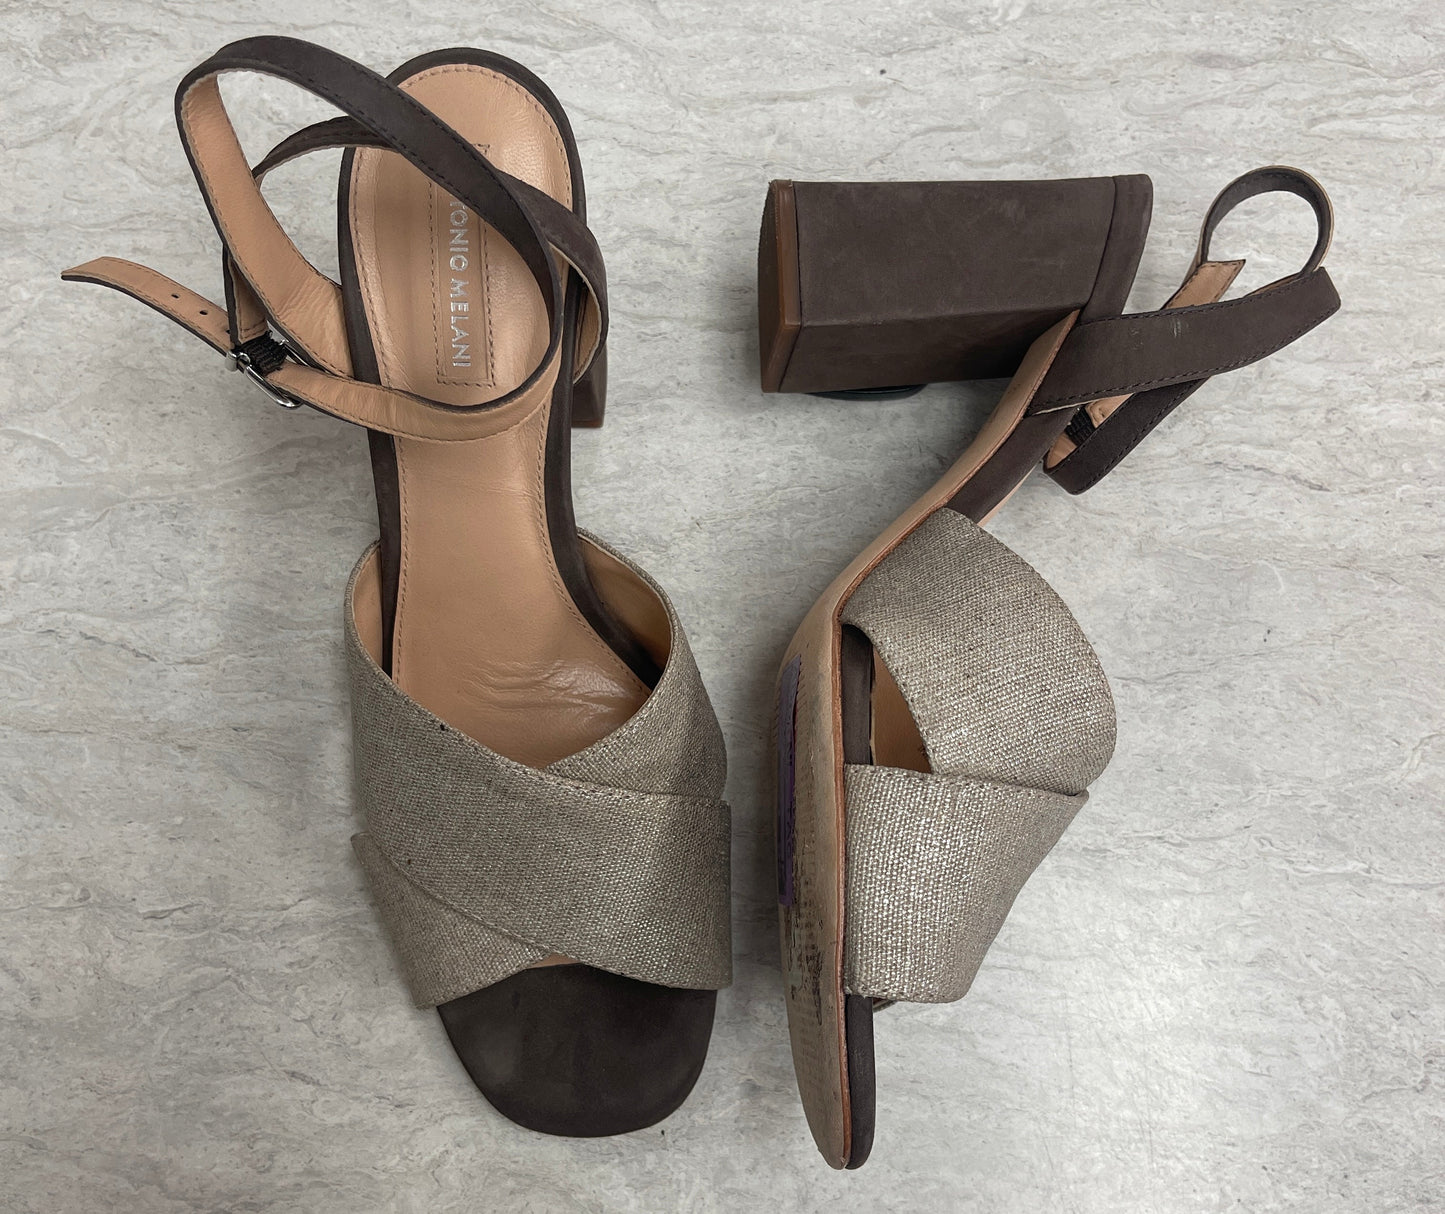 Grey Shoes Heels Block Antonio Melani, Size 9.5